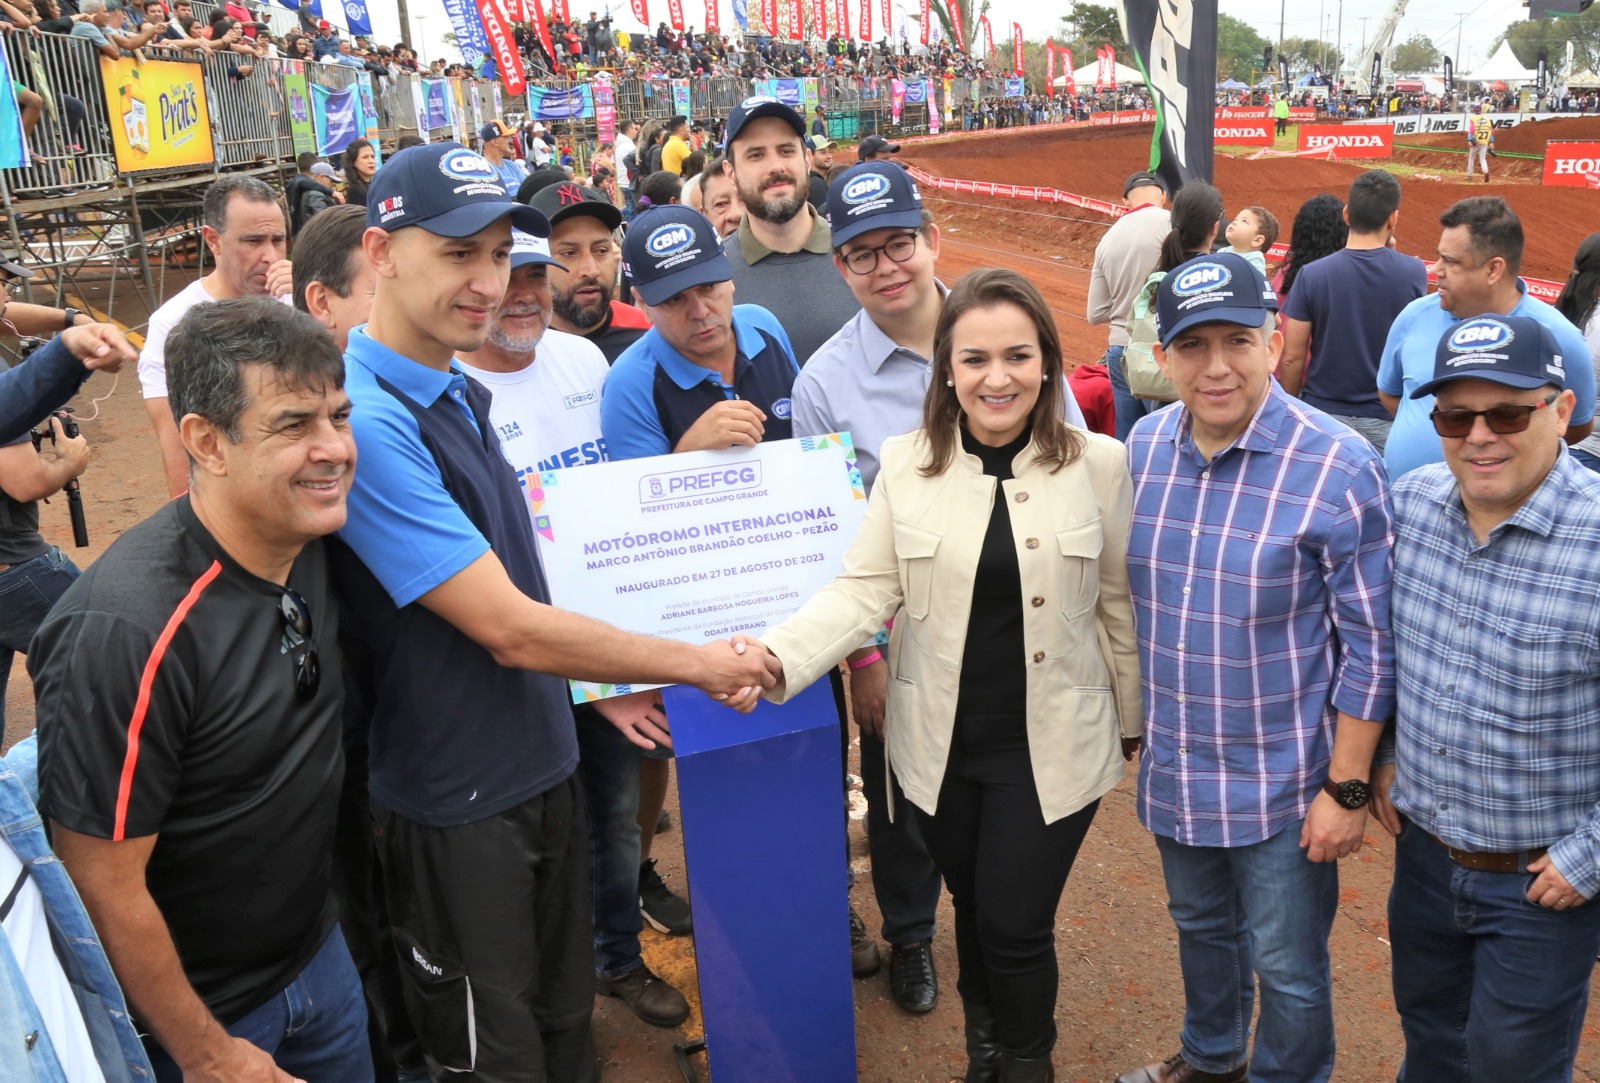 Prefeitura inaugura Motódromo Internacional com pista considerada a melhor da América Latina